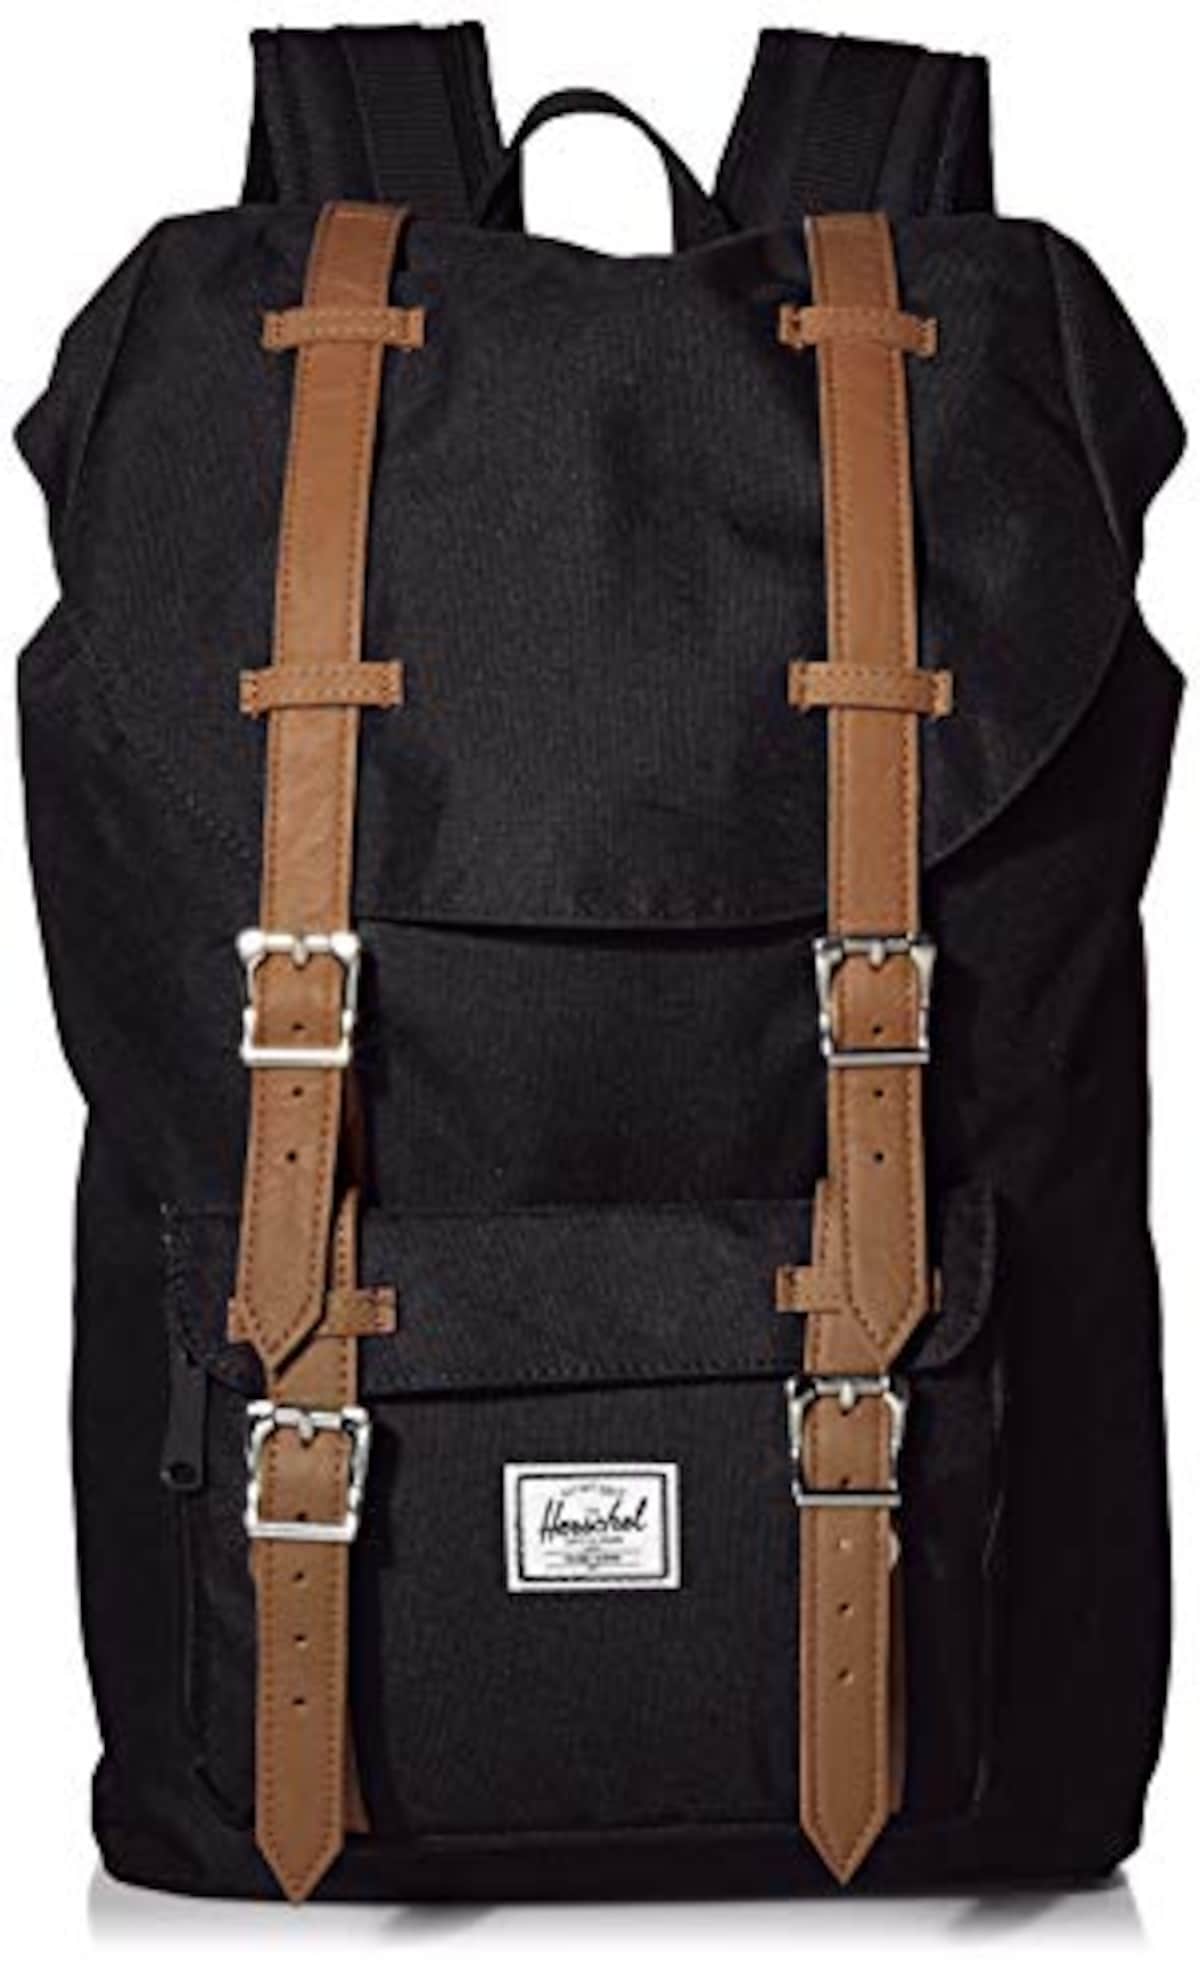 Herschel Little America Black & Saddle Backpack